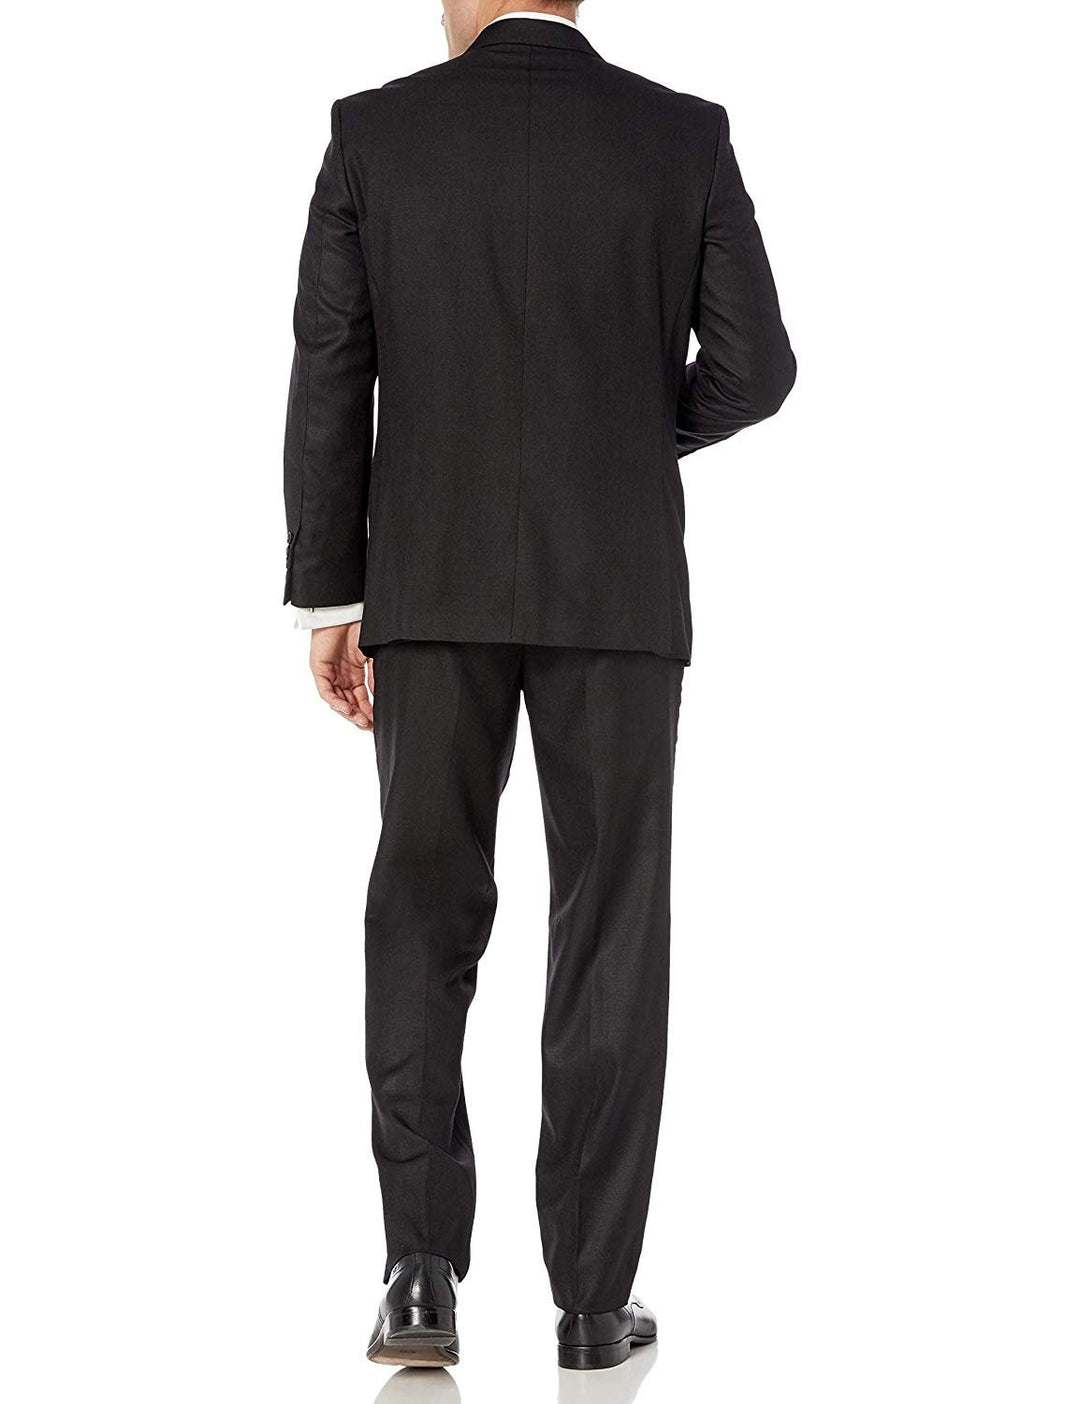 Adam Baker Men's Modern Fit 3-Piece (Jacket, Vets, Trousers) Peak Lapel Linen Feel Suit Set - CLEARANCE